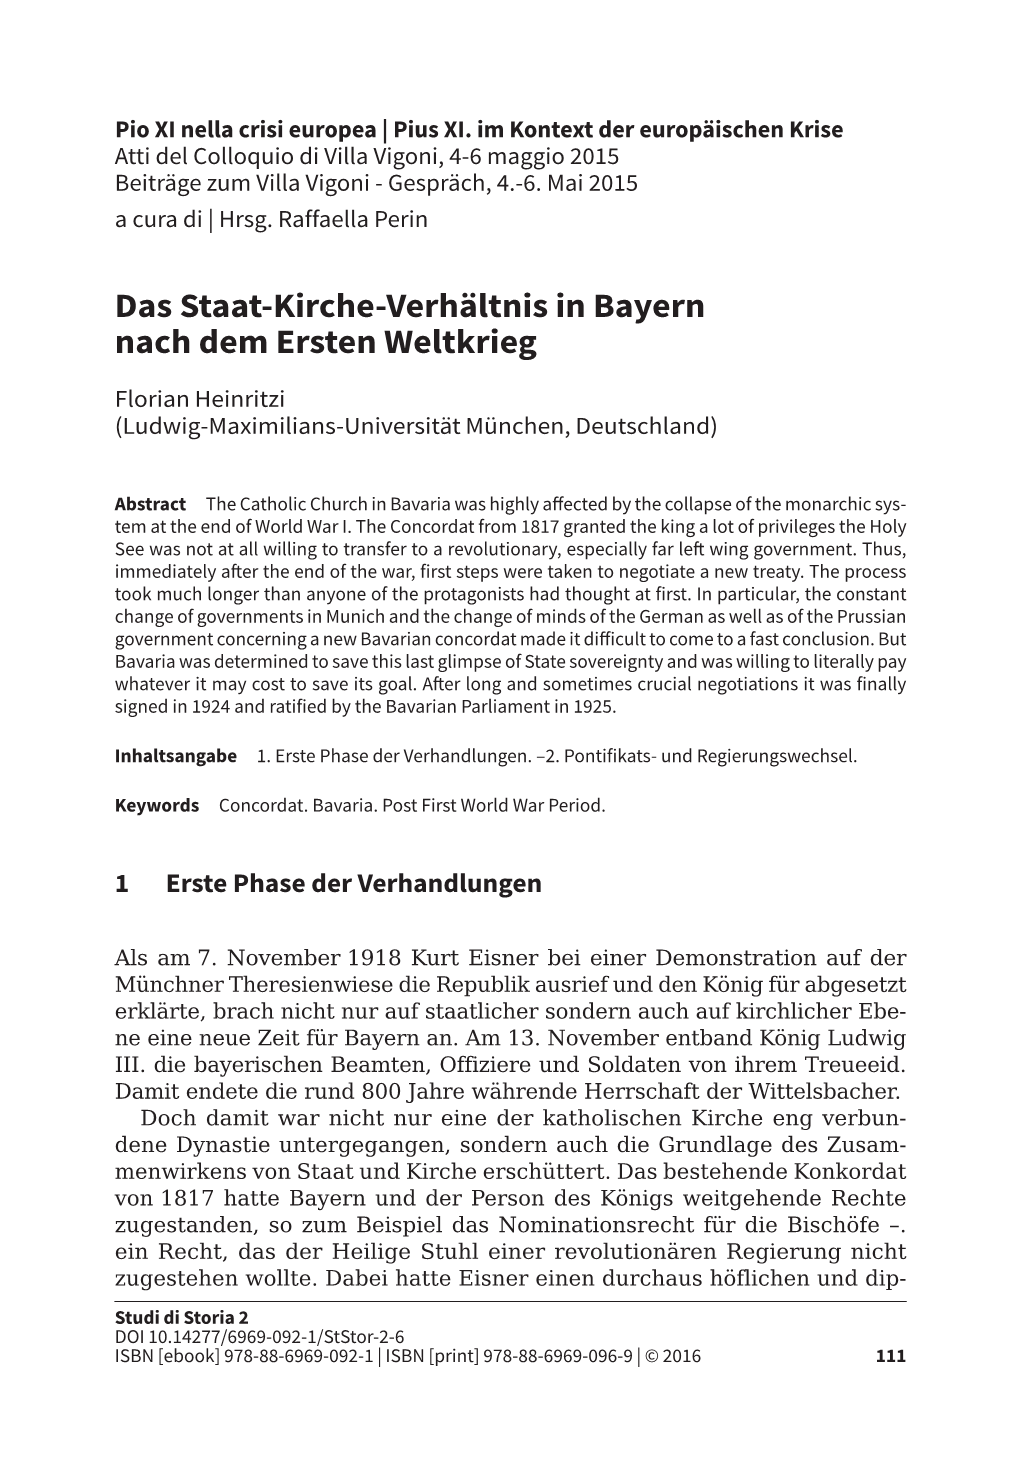 Das Staat-Kirche-Verhältnis in Bayern Nach Dem Ersten Weltkrieg